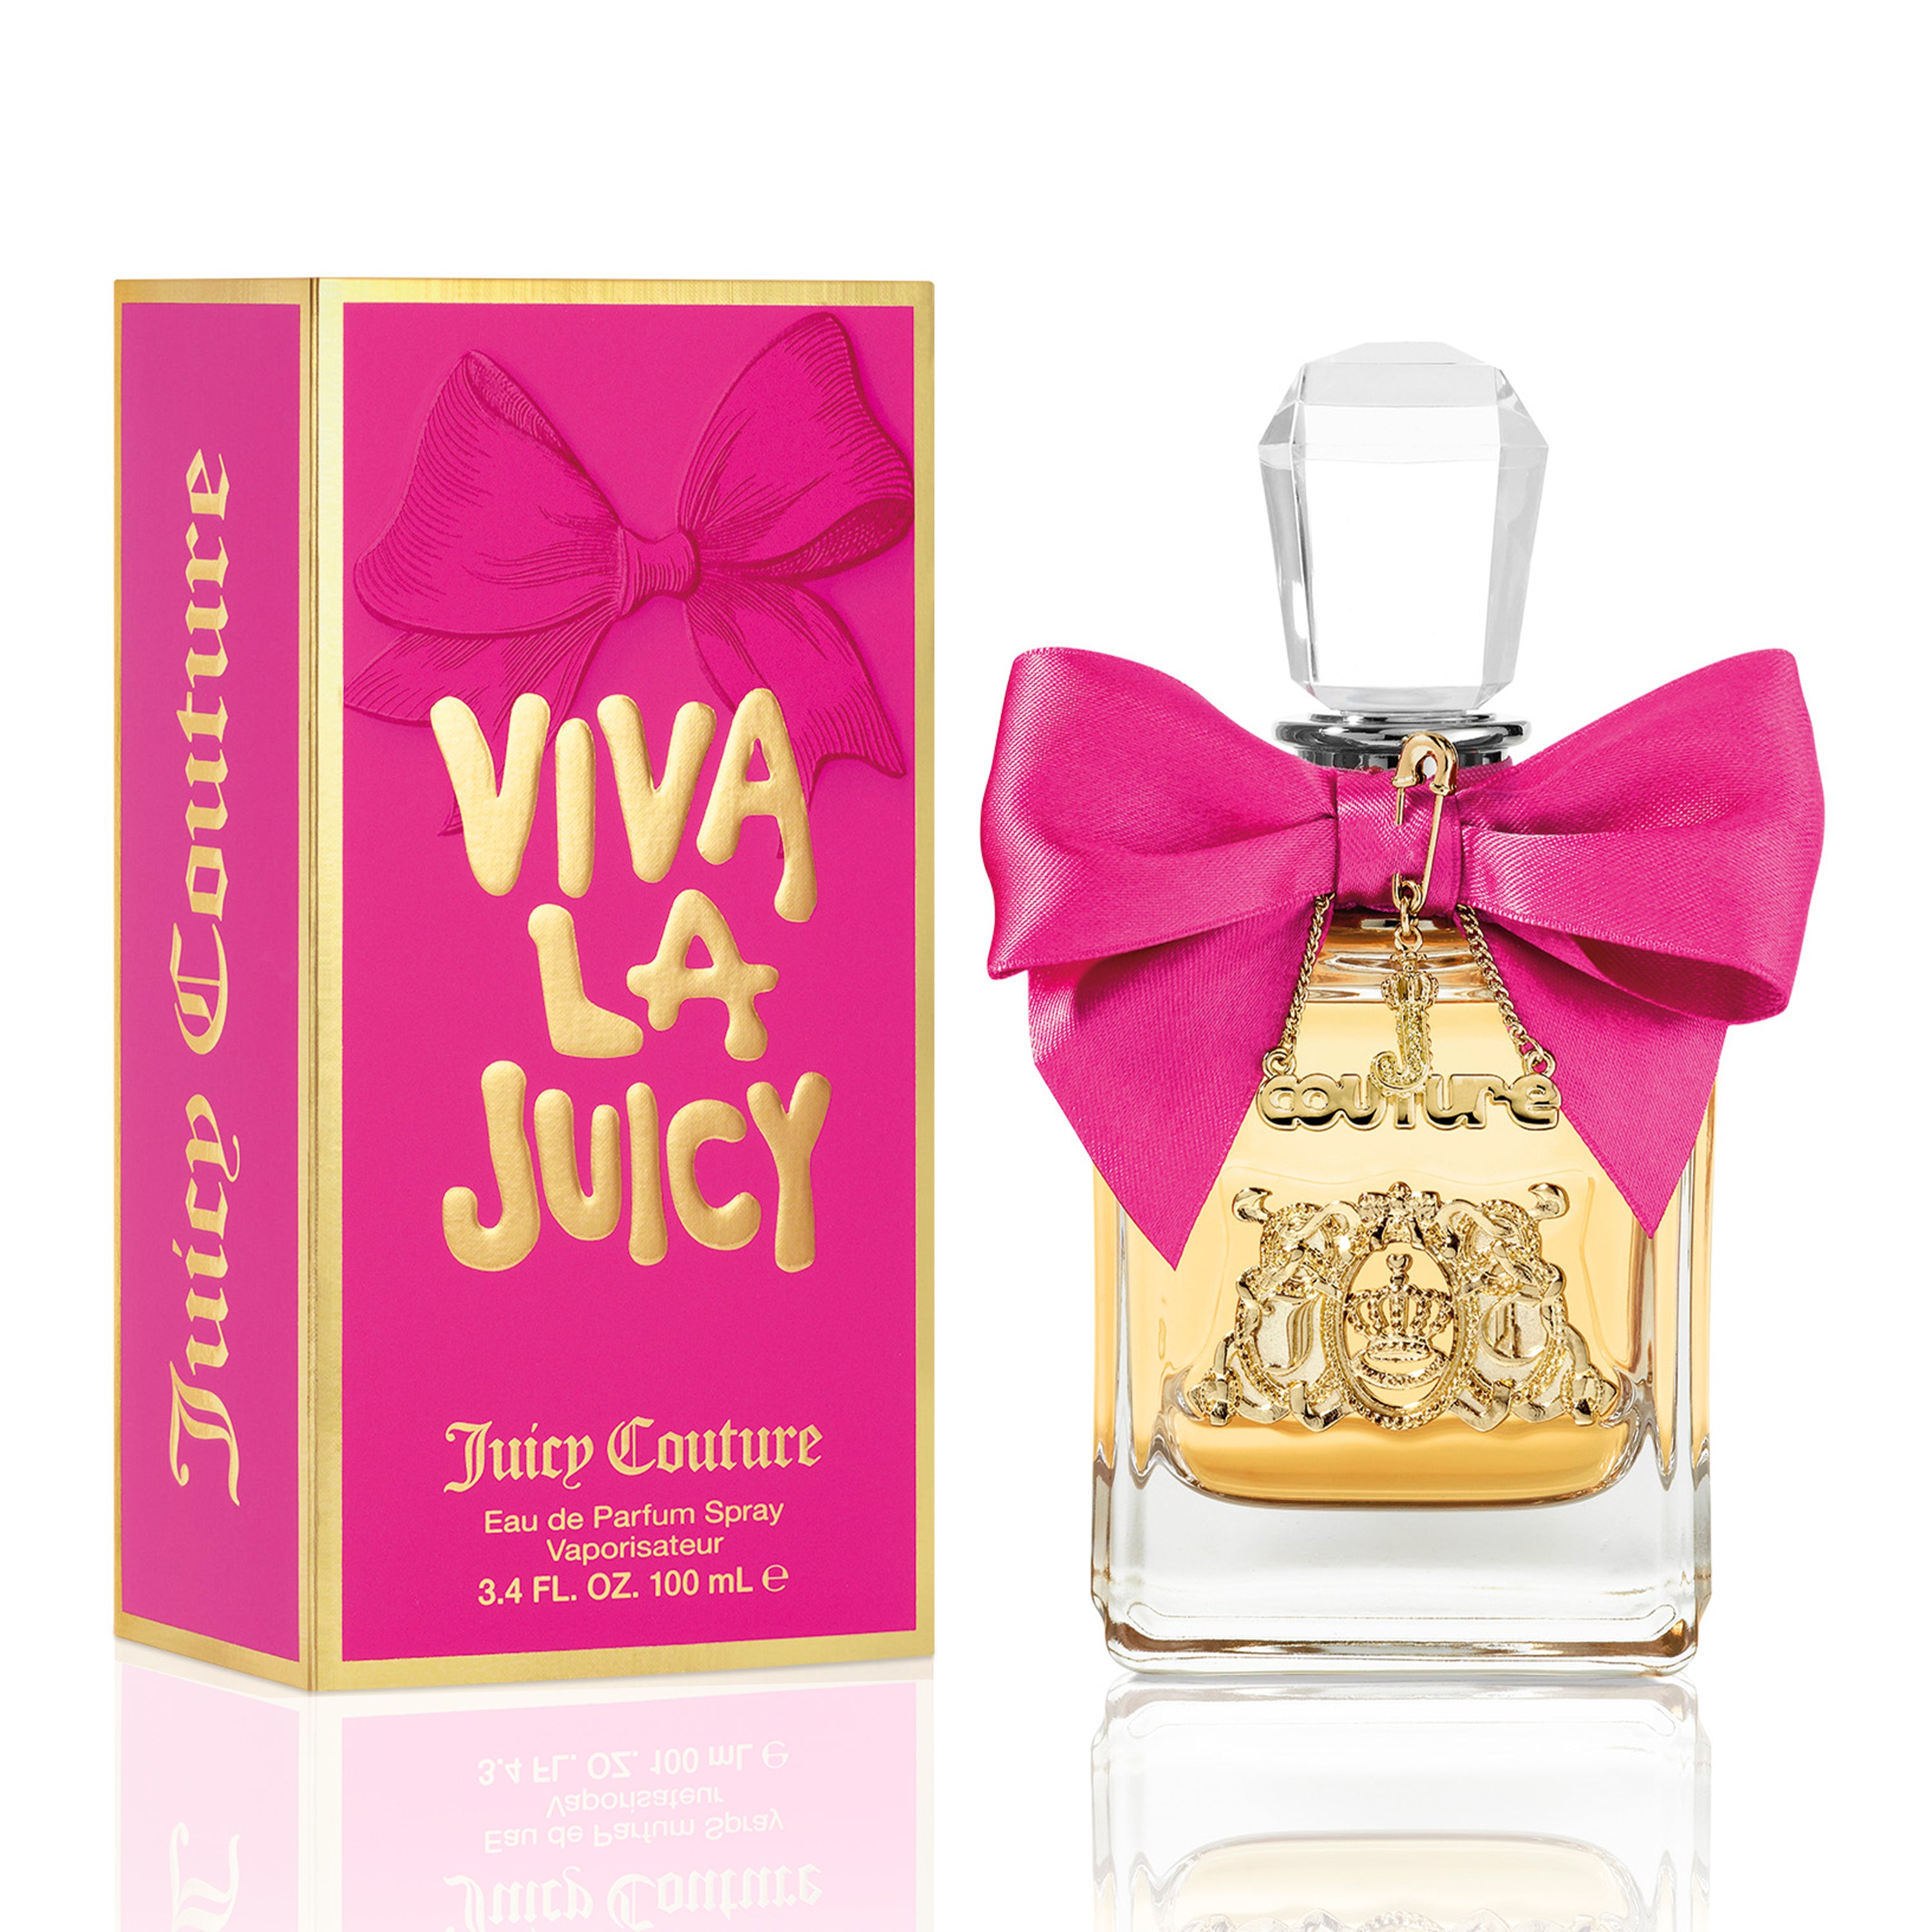 Viva La Juicy Eau de Parfum Spray - Juicy Couture